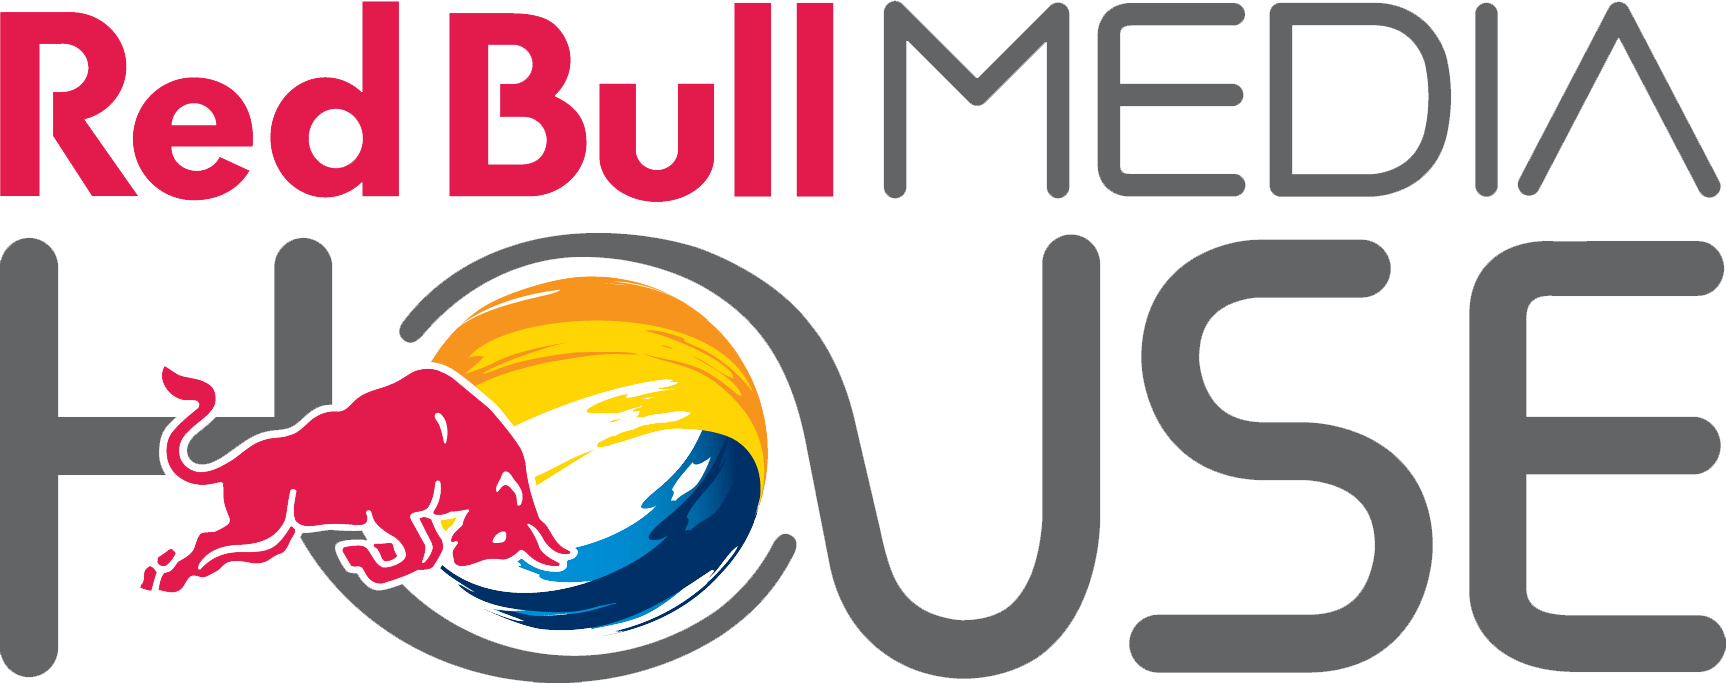 Media House Logo - Red-Bull-Media-House-Logo - hannes kutza